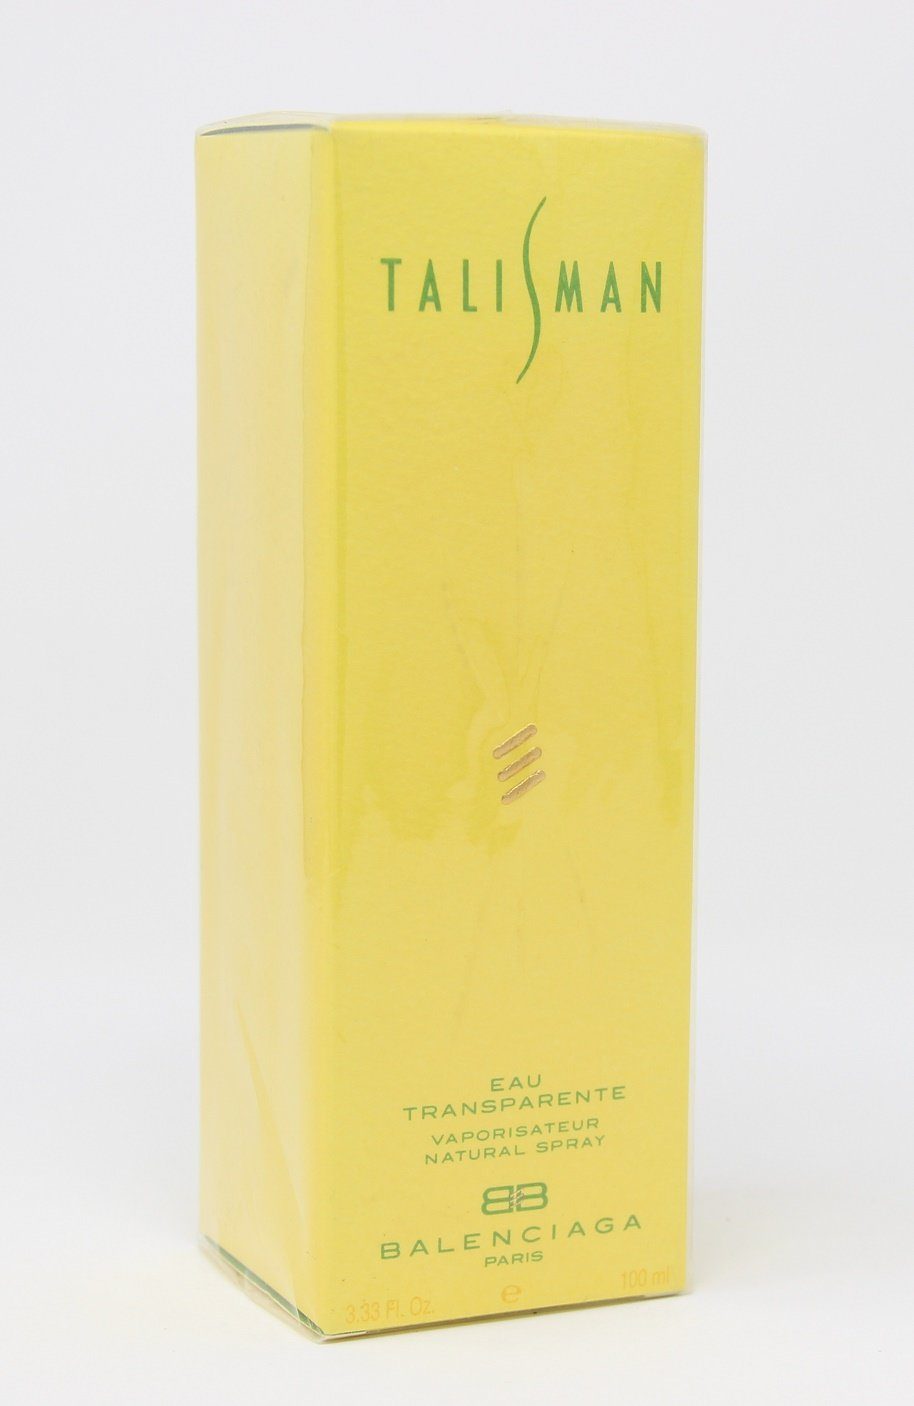 Balenciaga 100ml Talisman Transparente Eau Eau Spray de Balenciaga Parfum Natural